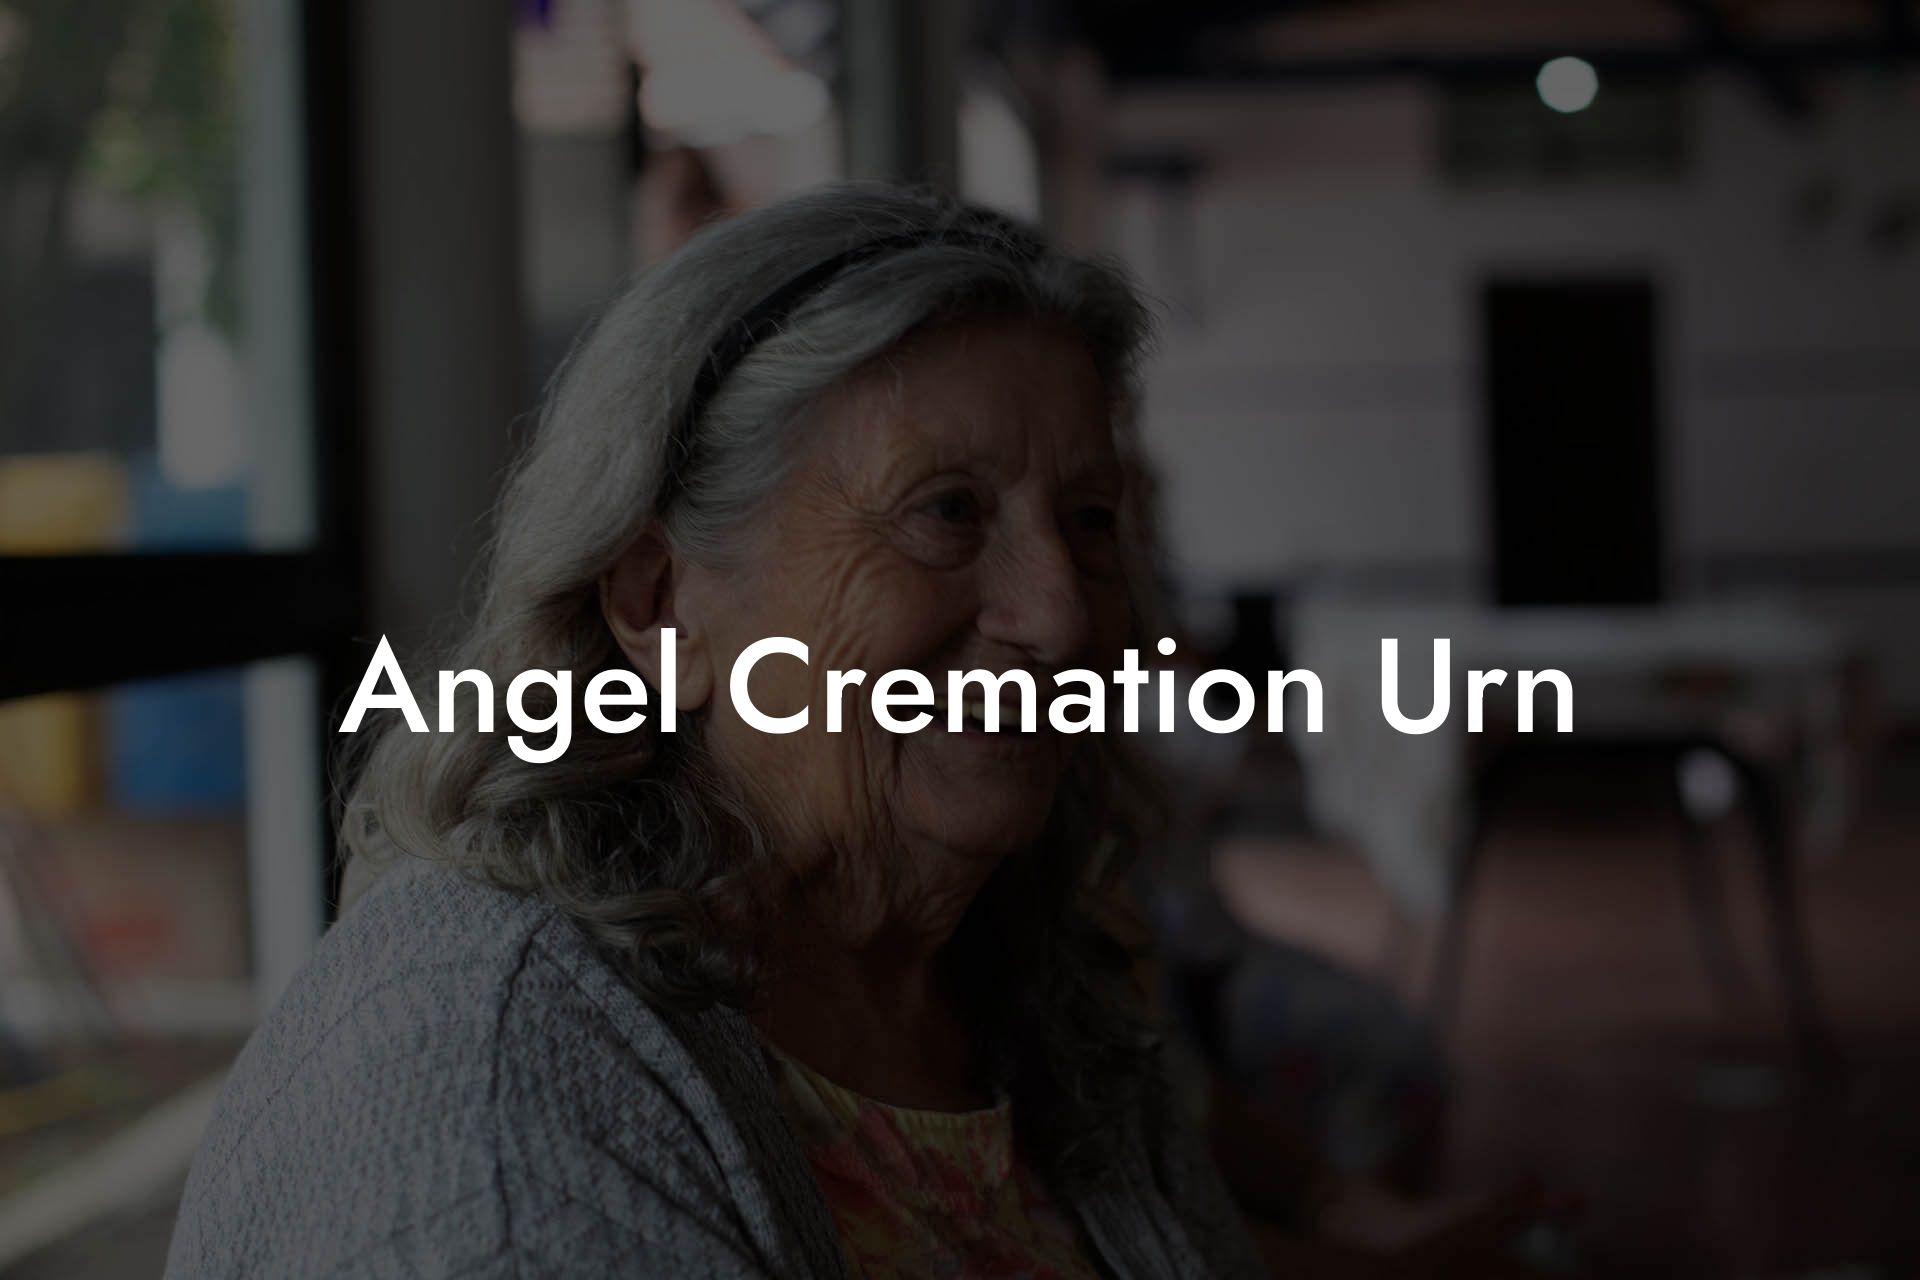 Angel Cremation Urn